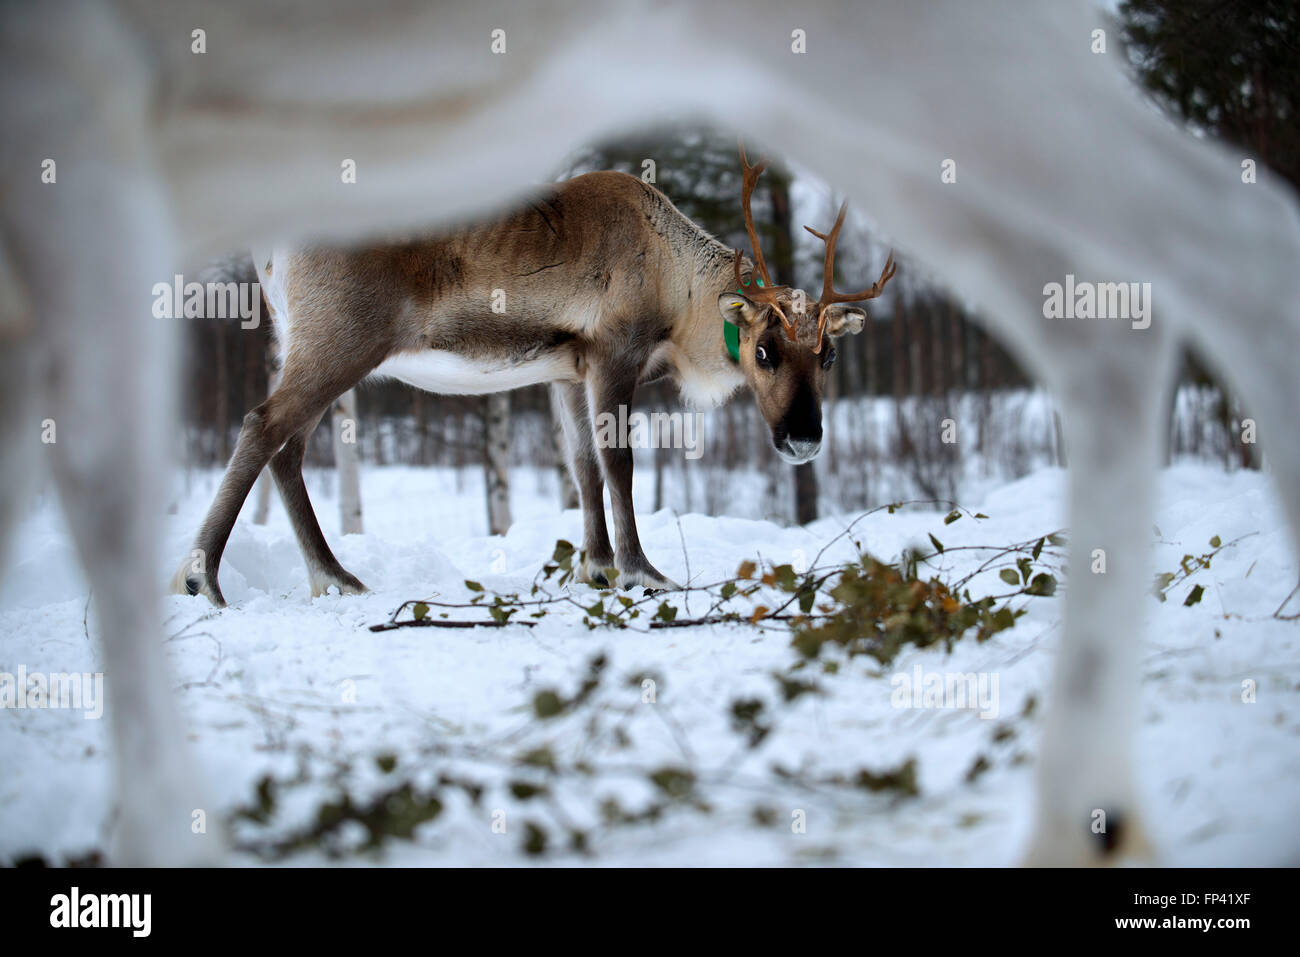 Élevage de rennes en Laponie, Finlande Salla. Le renne est une icône de la Laponie finlandaise, et il y a une bonne raison à cela : le num Banque D'Images